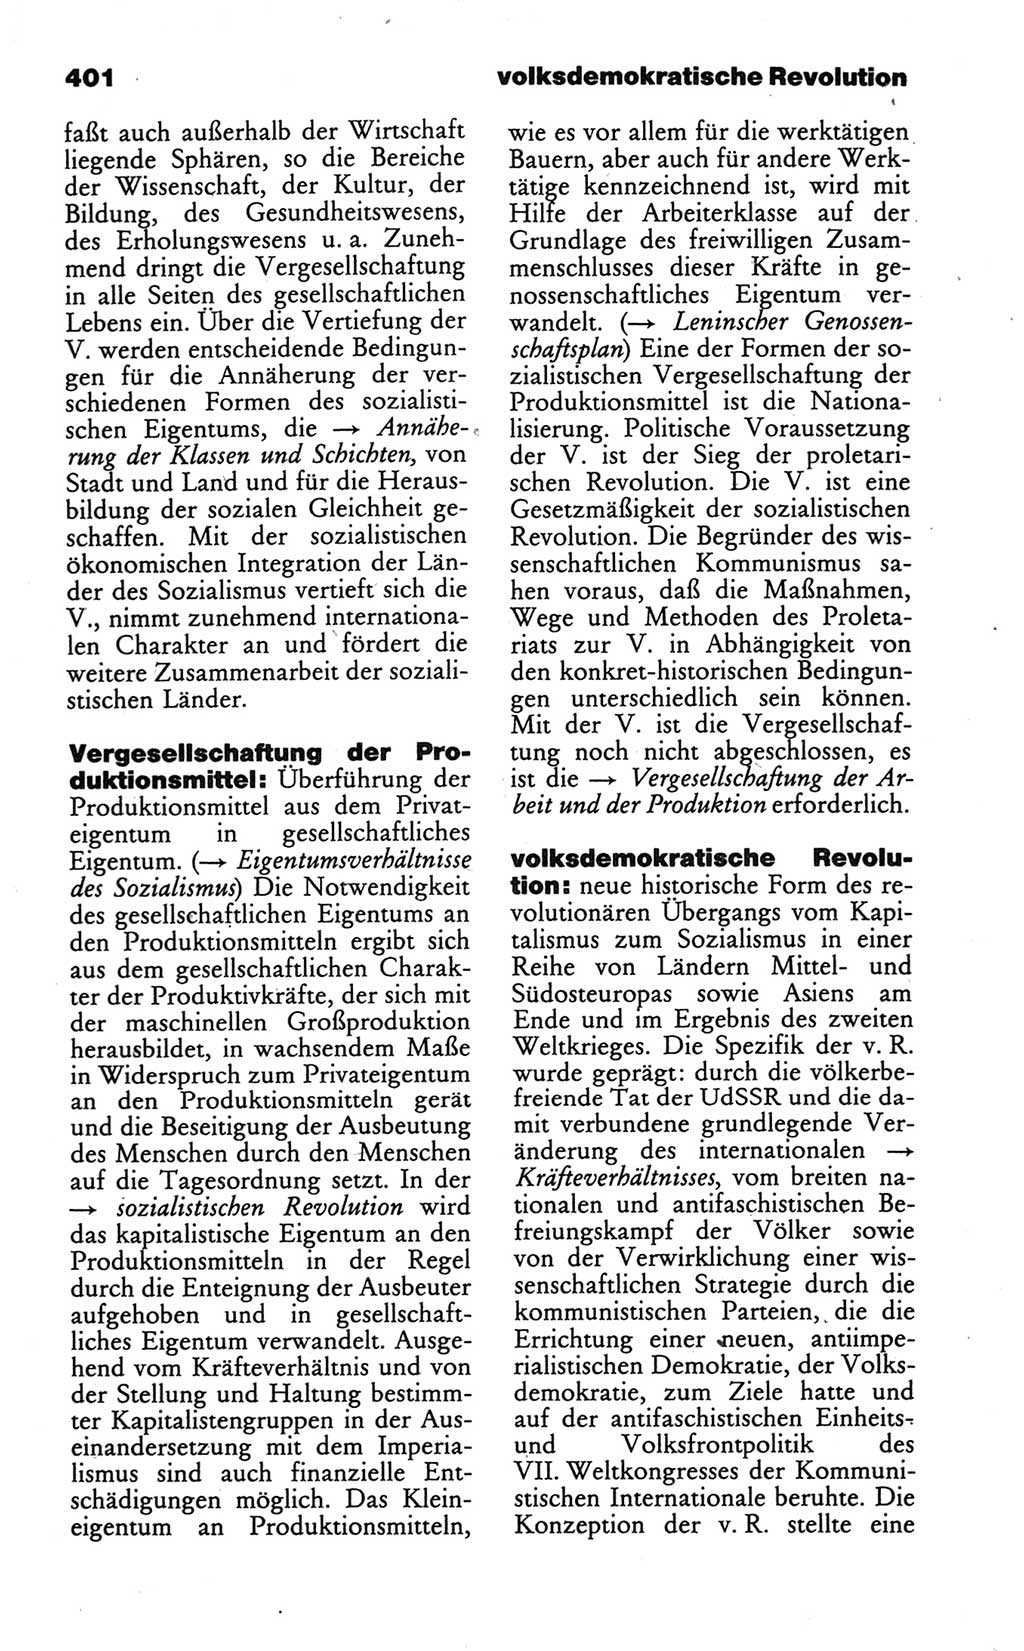 Wörterbuch des wissenschaftlichen Kommunismus [Deutsche Demokratische Republik (DDR)] 1986, Seite 401 (Wb. wiss. Komm. DDR 1986, S. 401)